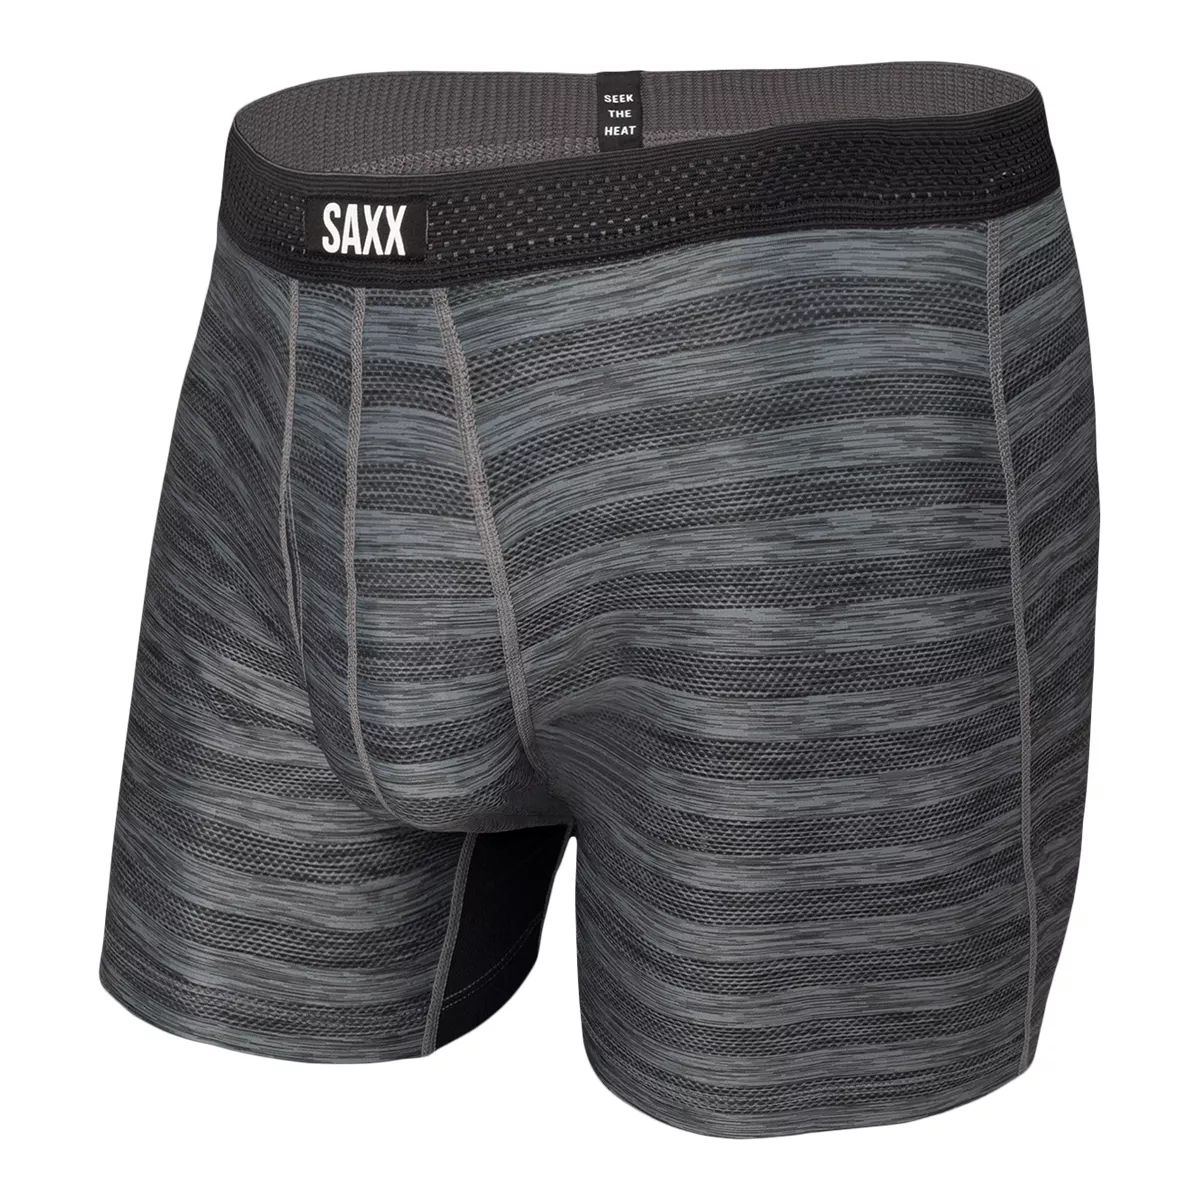 Saxx Droptemp Hotshot Stripe Men's Boxer Brief Workout Underwear Quick-Dry